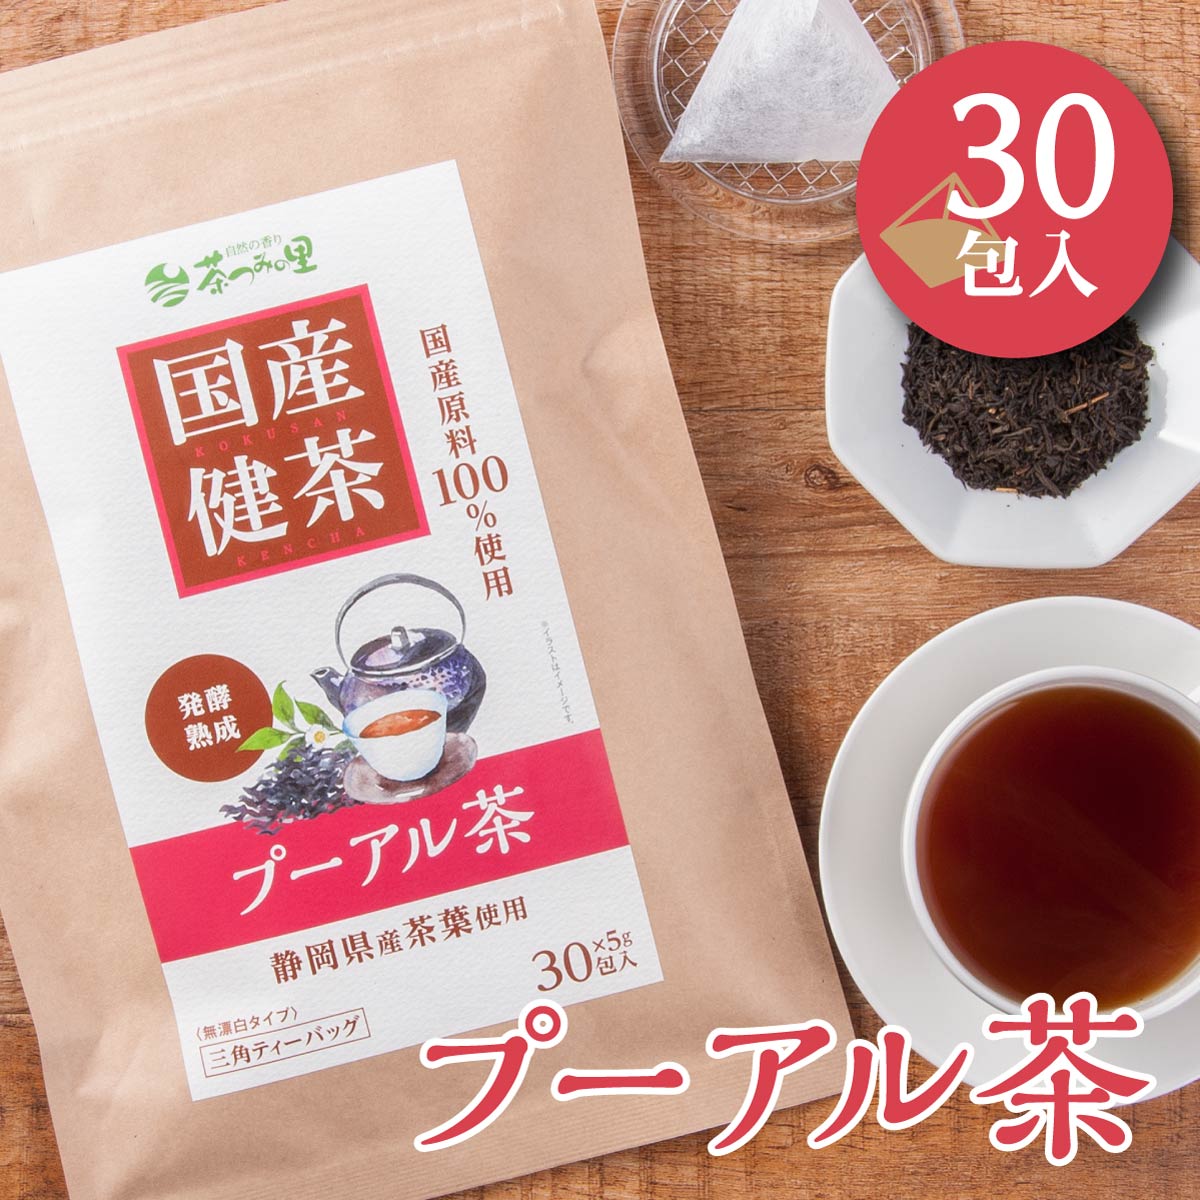 【新発売】 国産 プーアル茶 5g×30包入 ティーバッグ プーアール茶 送料無料 健康茶 プーアル ティーパック